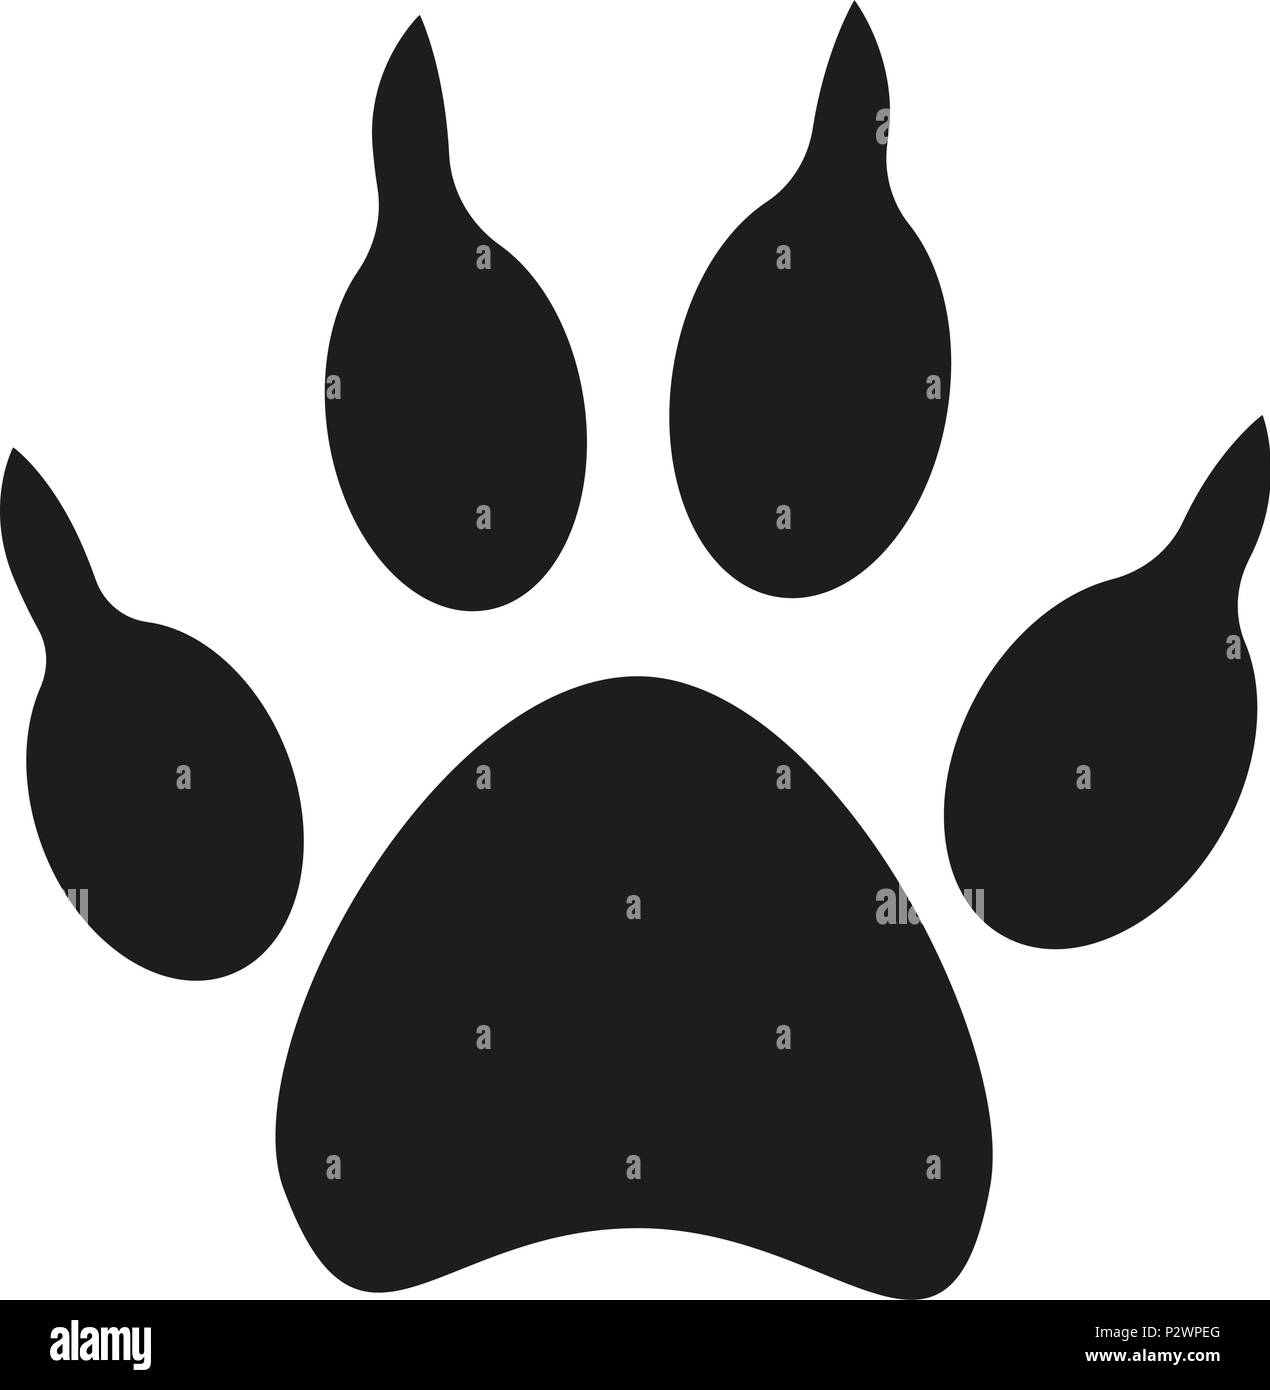 Schwarze und weisse Hund Pfote footprint Silhouette Stock Vektor